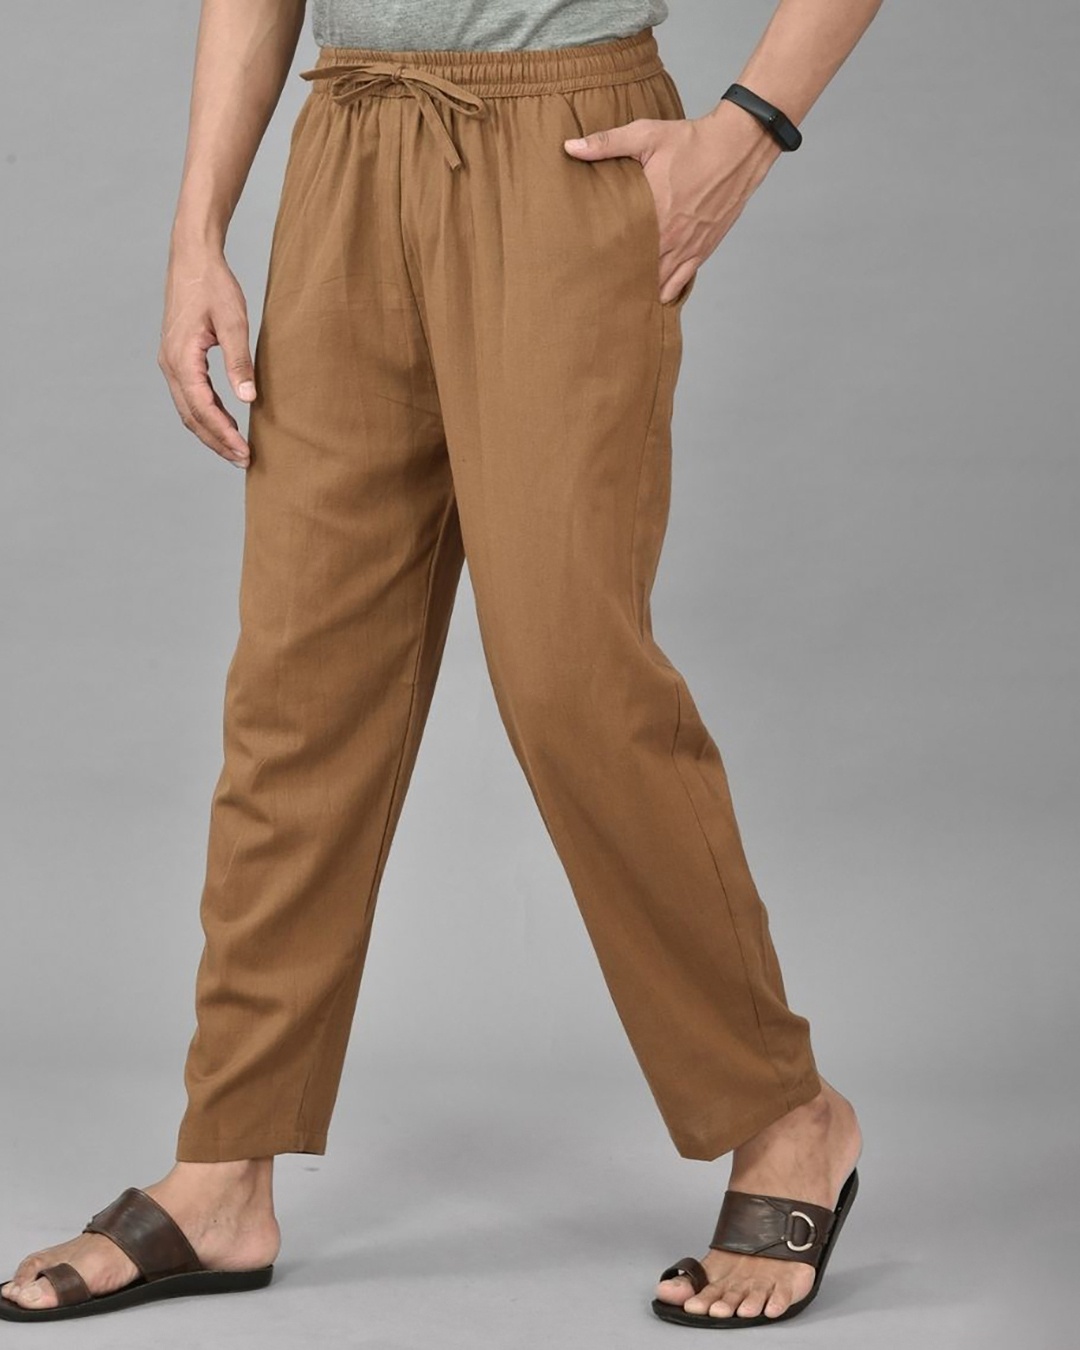 Men's Brown Pants - Macy's